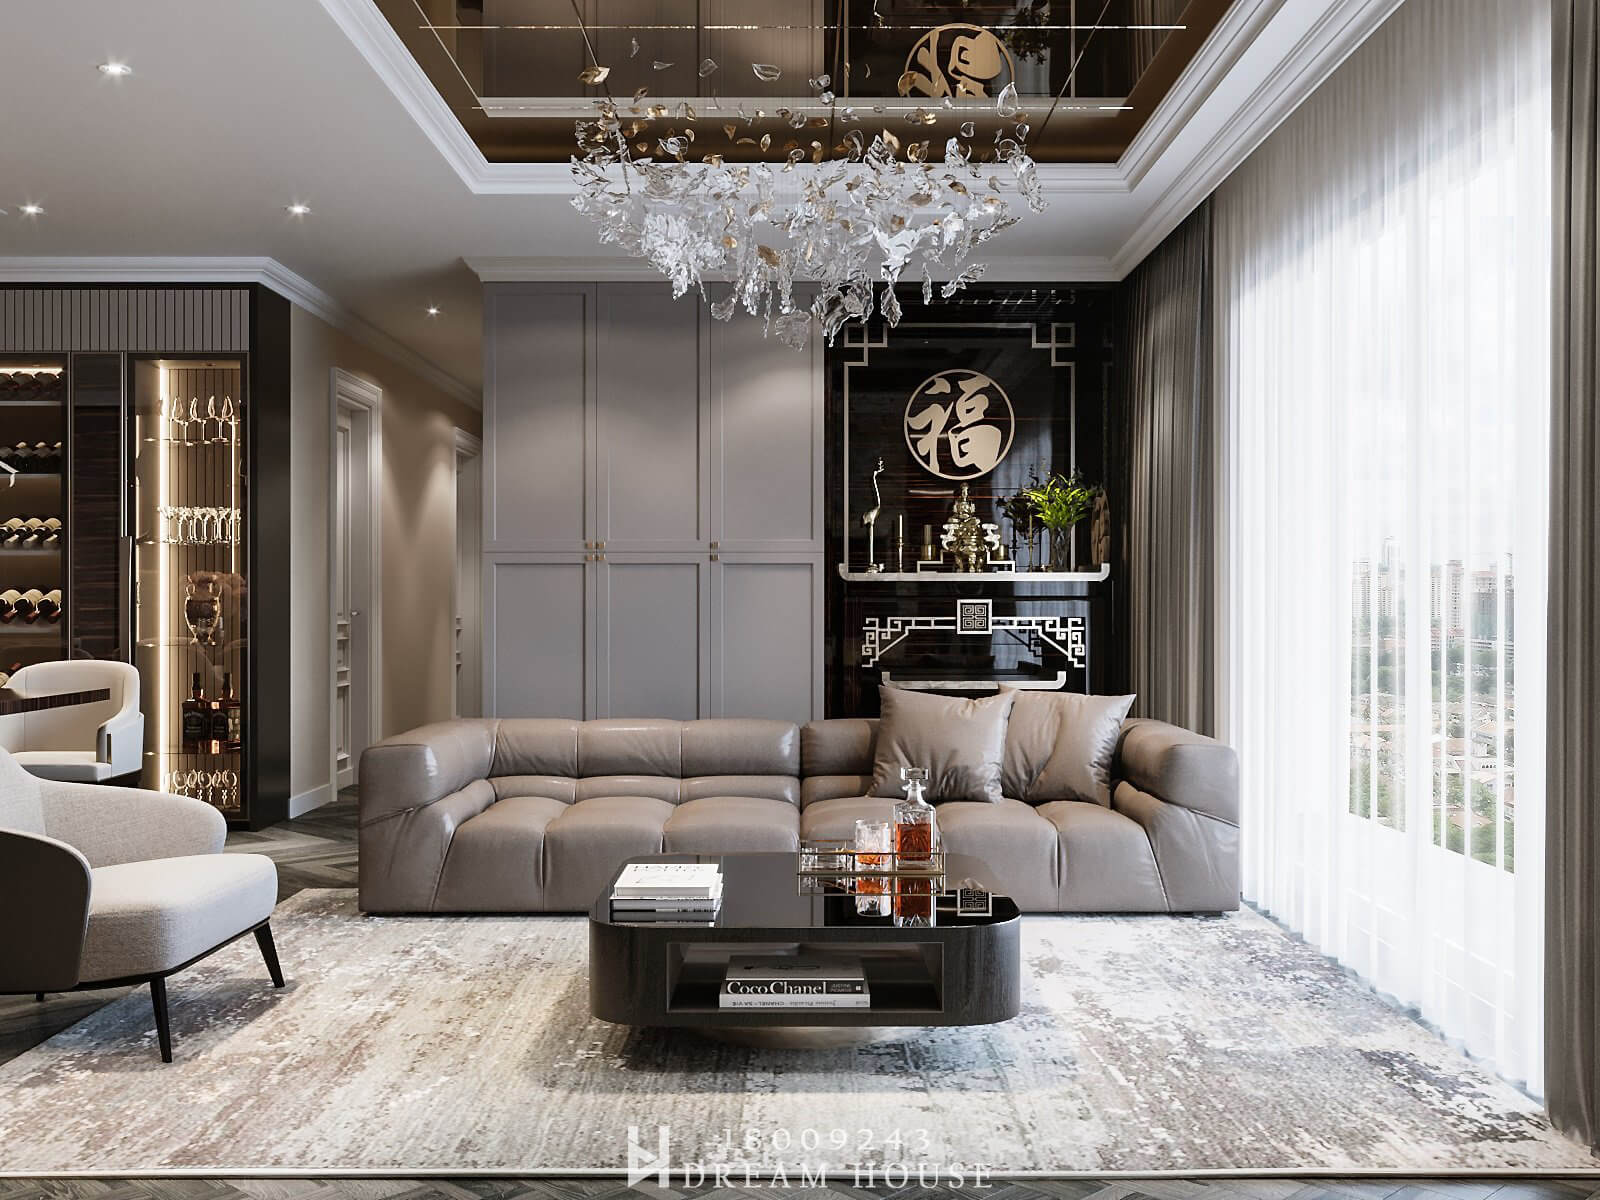 Thiết Kế Phong Cách Modern Luxury - Dự Án Seasons Avenue - 138m2 - Anh Được